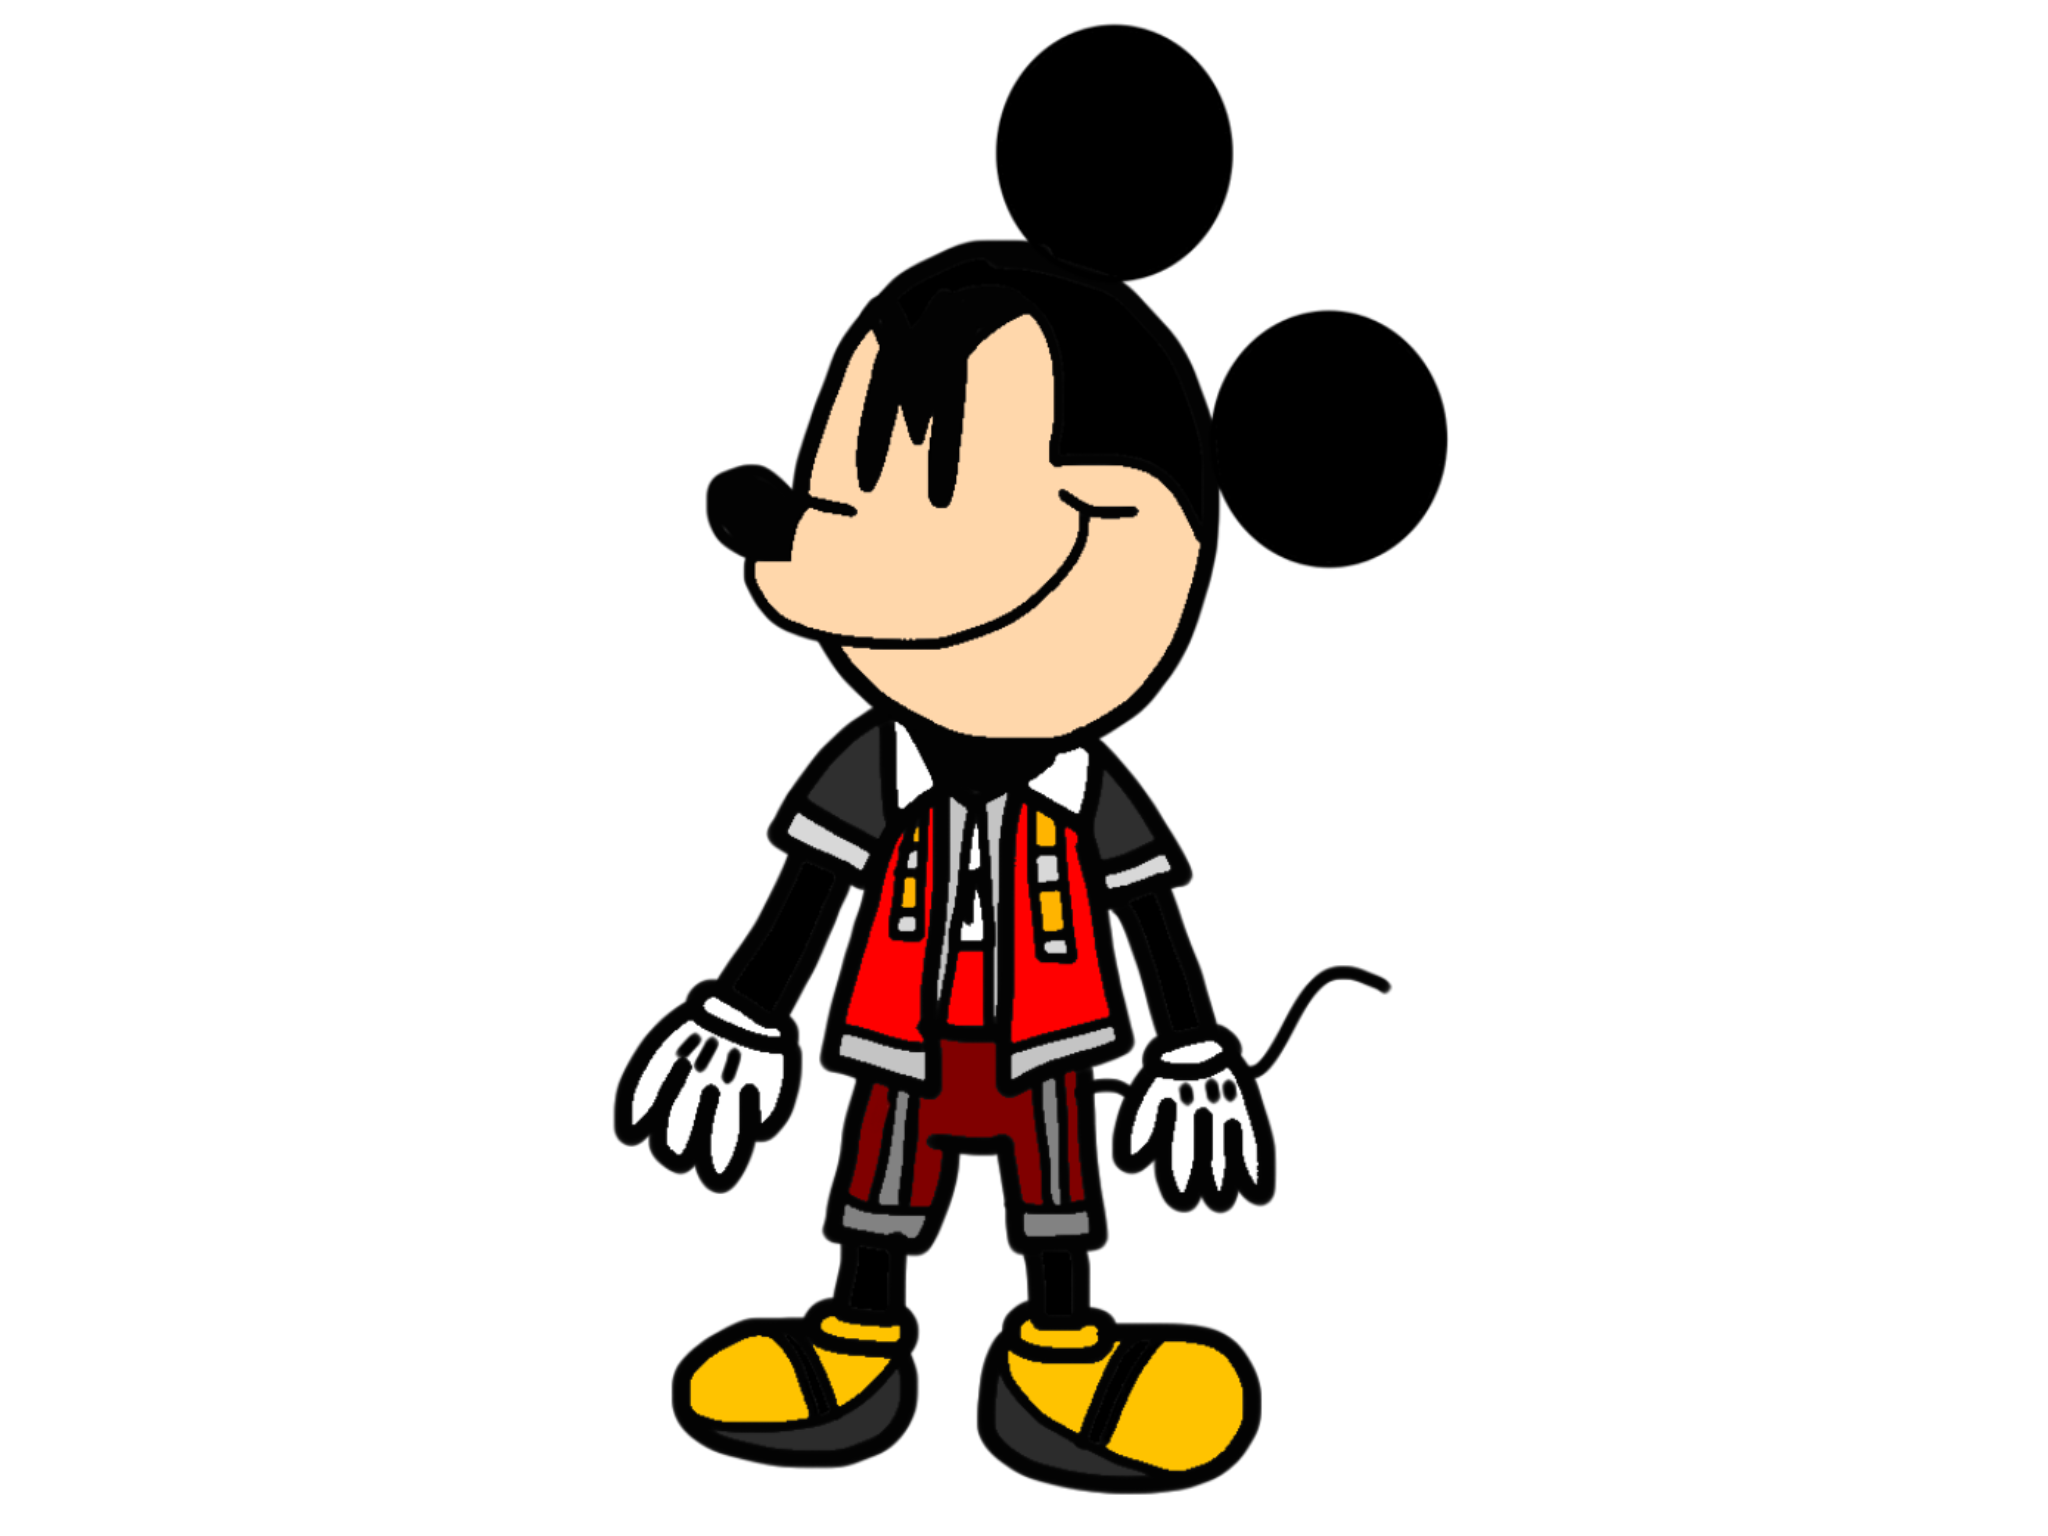 Kingdom Hearts Mickey Mouse by BabyLambCartoons on DeviantArt